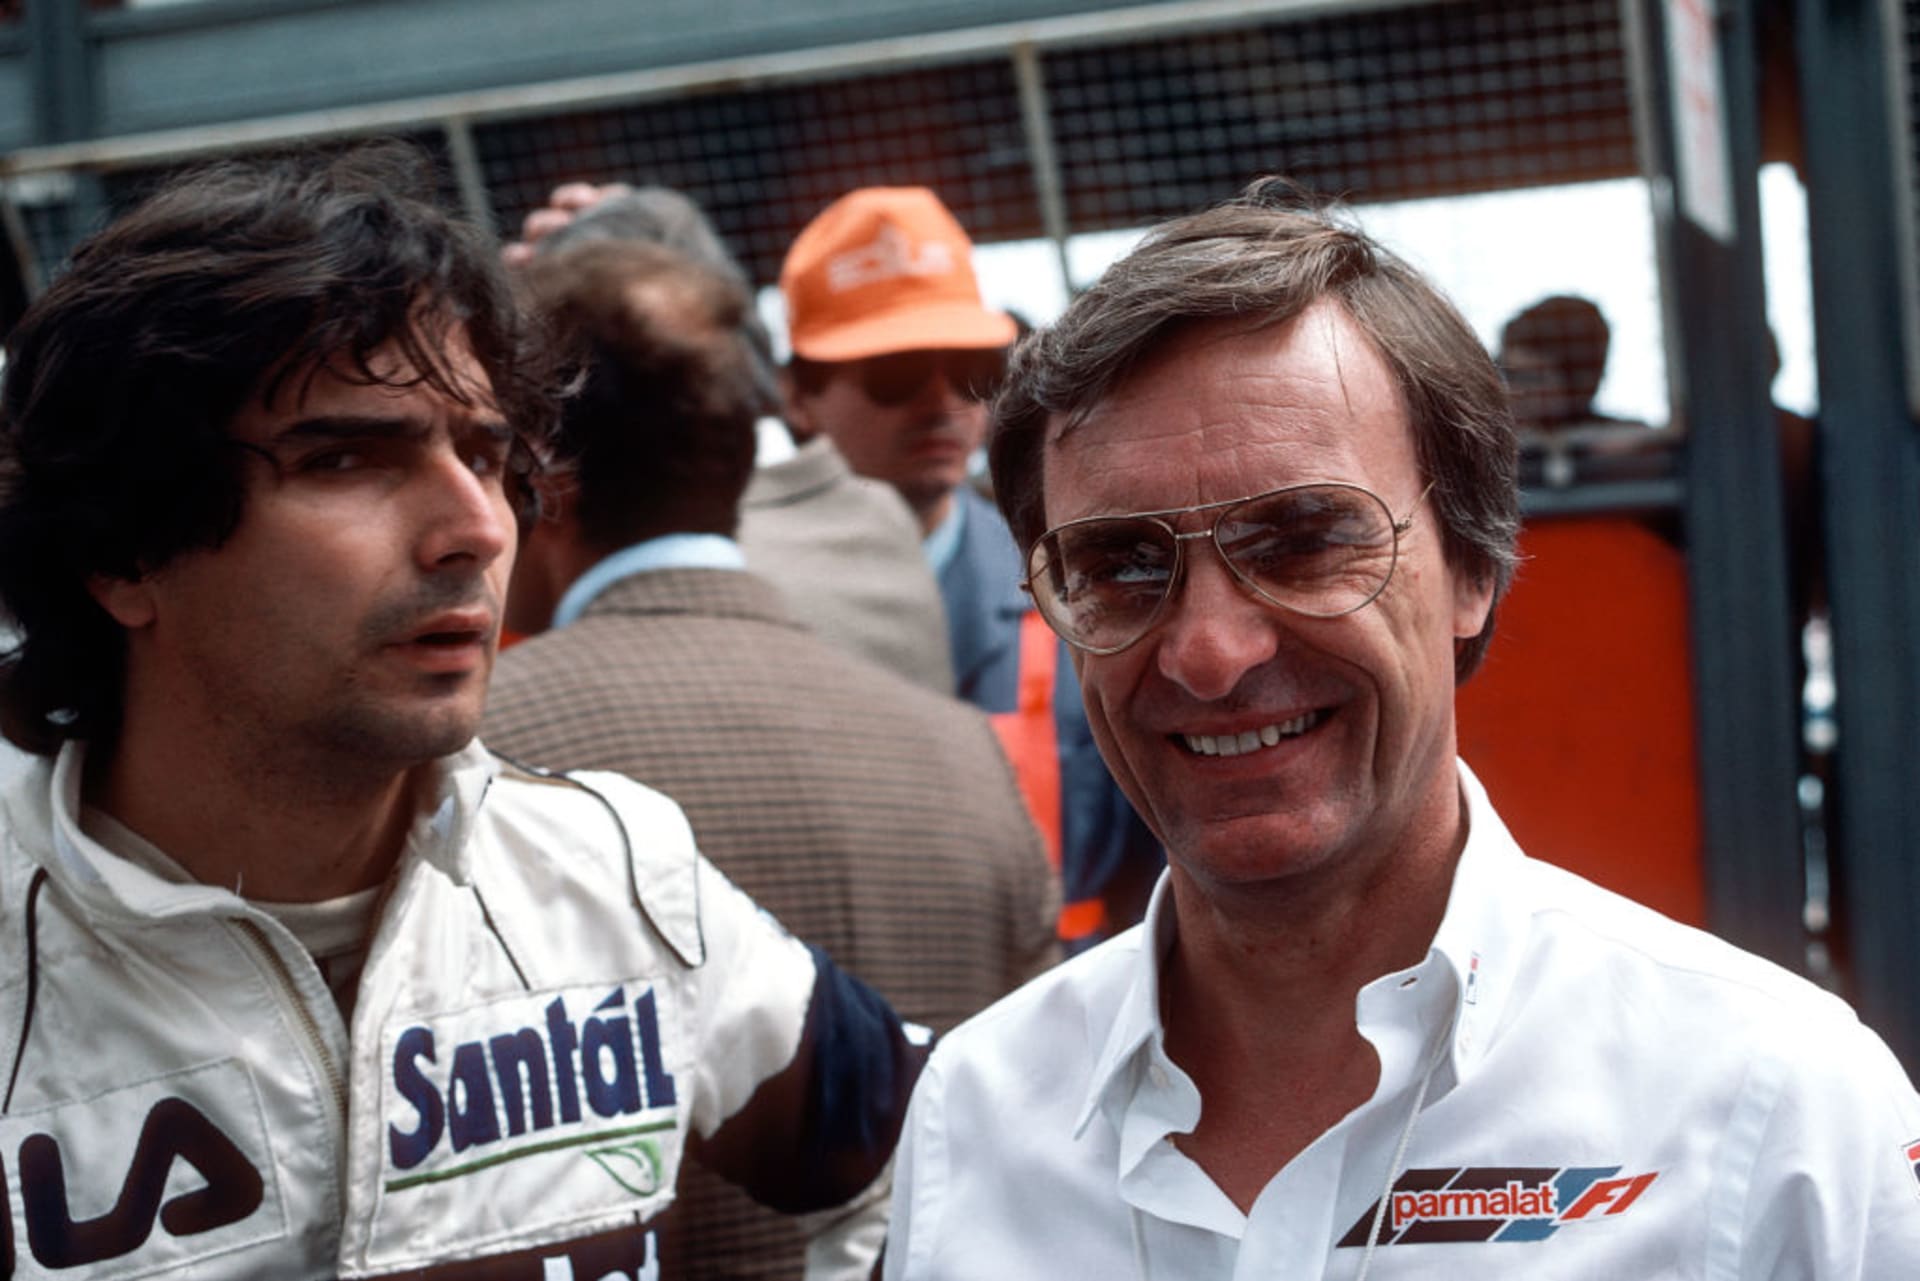 Piquet a Ecclestone coby jezdec a majitel týmu Brabham v 80. letech. Tihle dva si spolu vždycky náramně rozuměli. Ostatně Ecclestone Hamiltonovo nařčení Piqueta z rasismu označil za hromadu sra.ek.